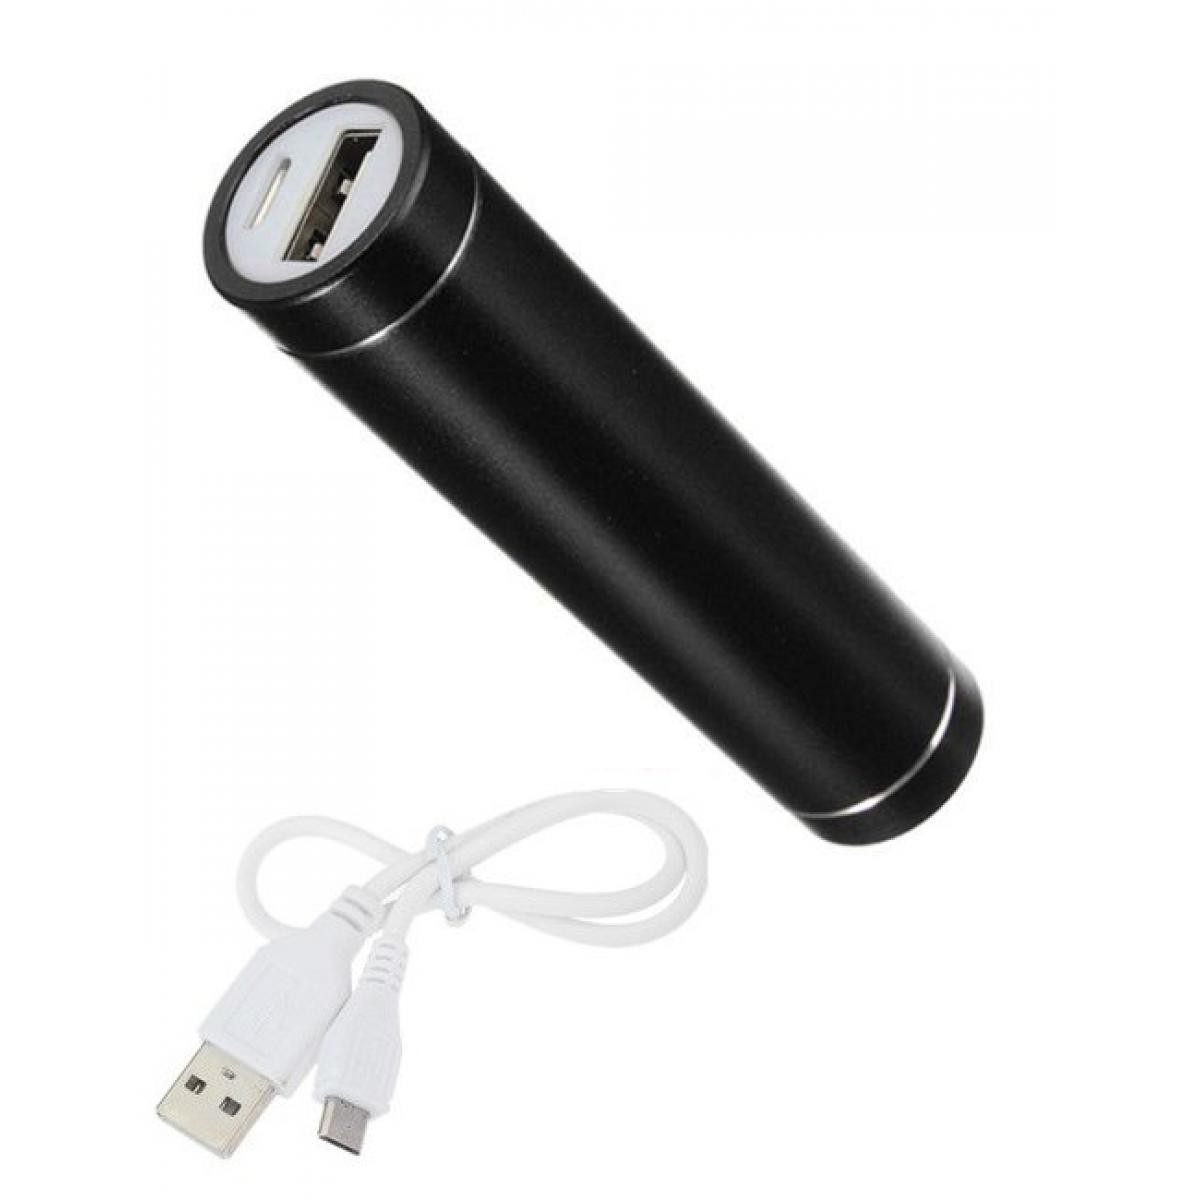 Shot - Batterie Chargeur Externe pour "XIAOMI Redmi 9" Power Bank 2600mAh avec Cable USB/Mirco USB Secours Telephone (NOIR) - Chargeur secteur téléphone